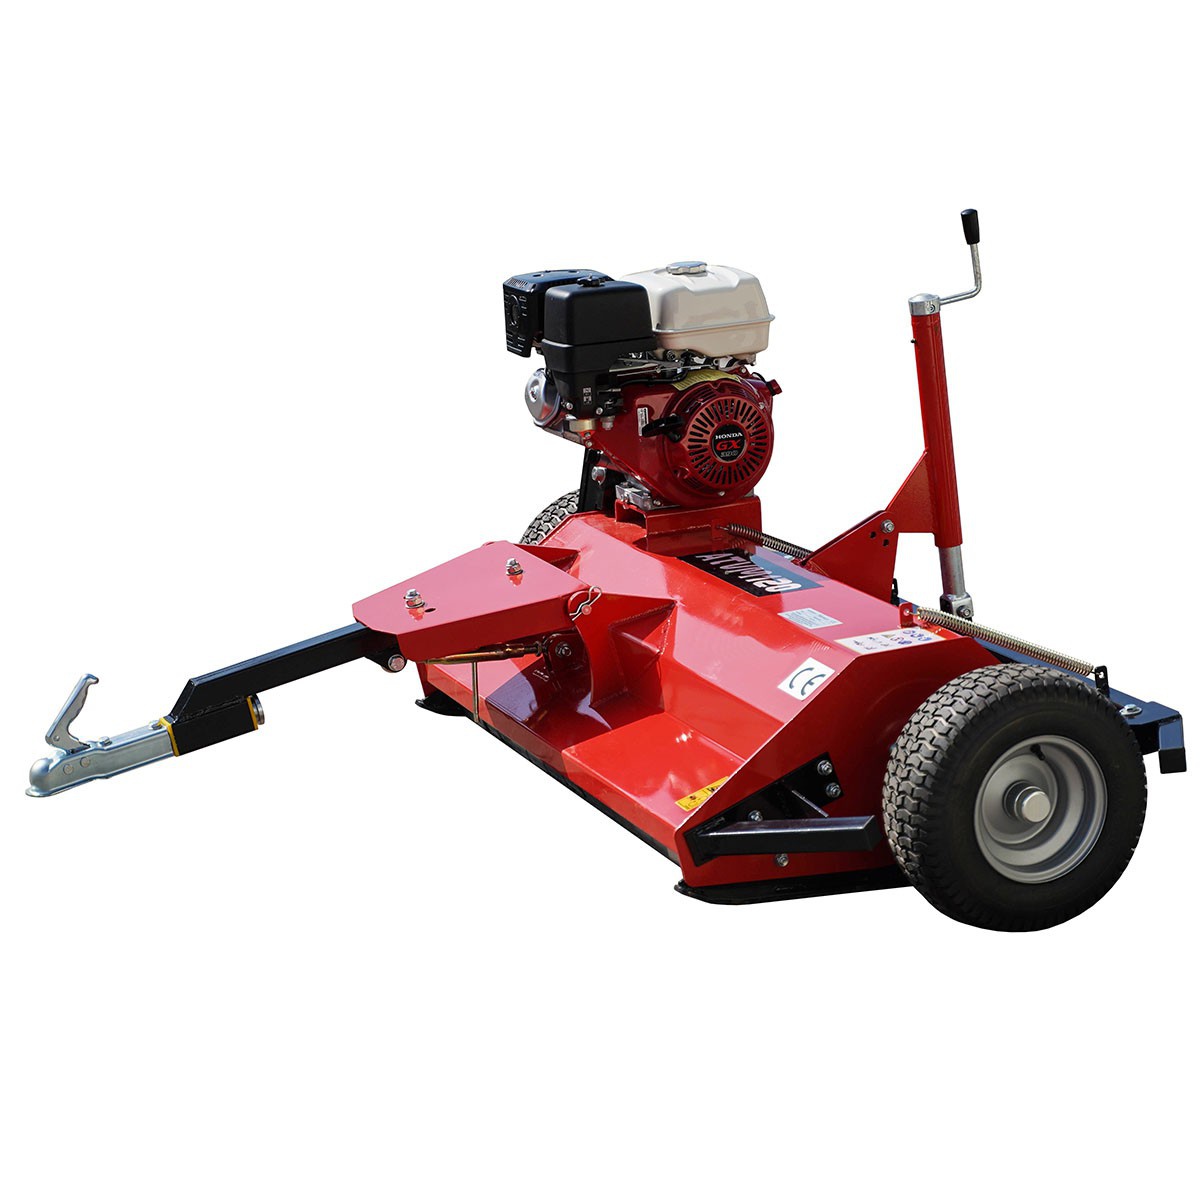 petrol mowers to atv - Petrol flail mower ATVM 120 for QUAD / HONDA GX390